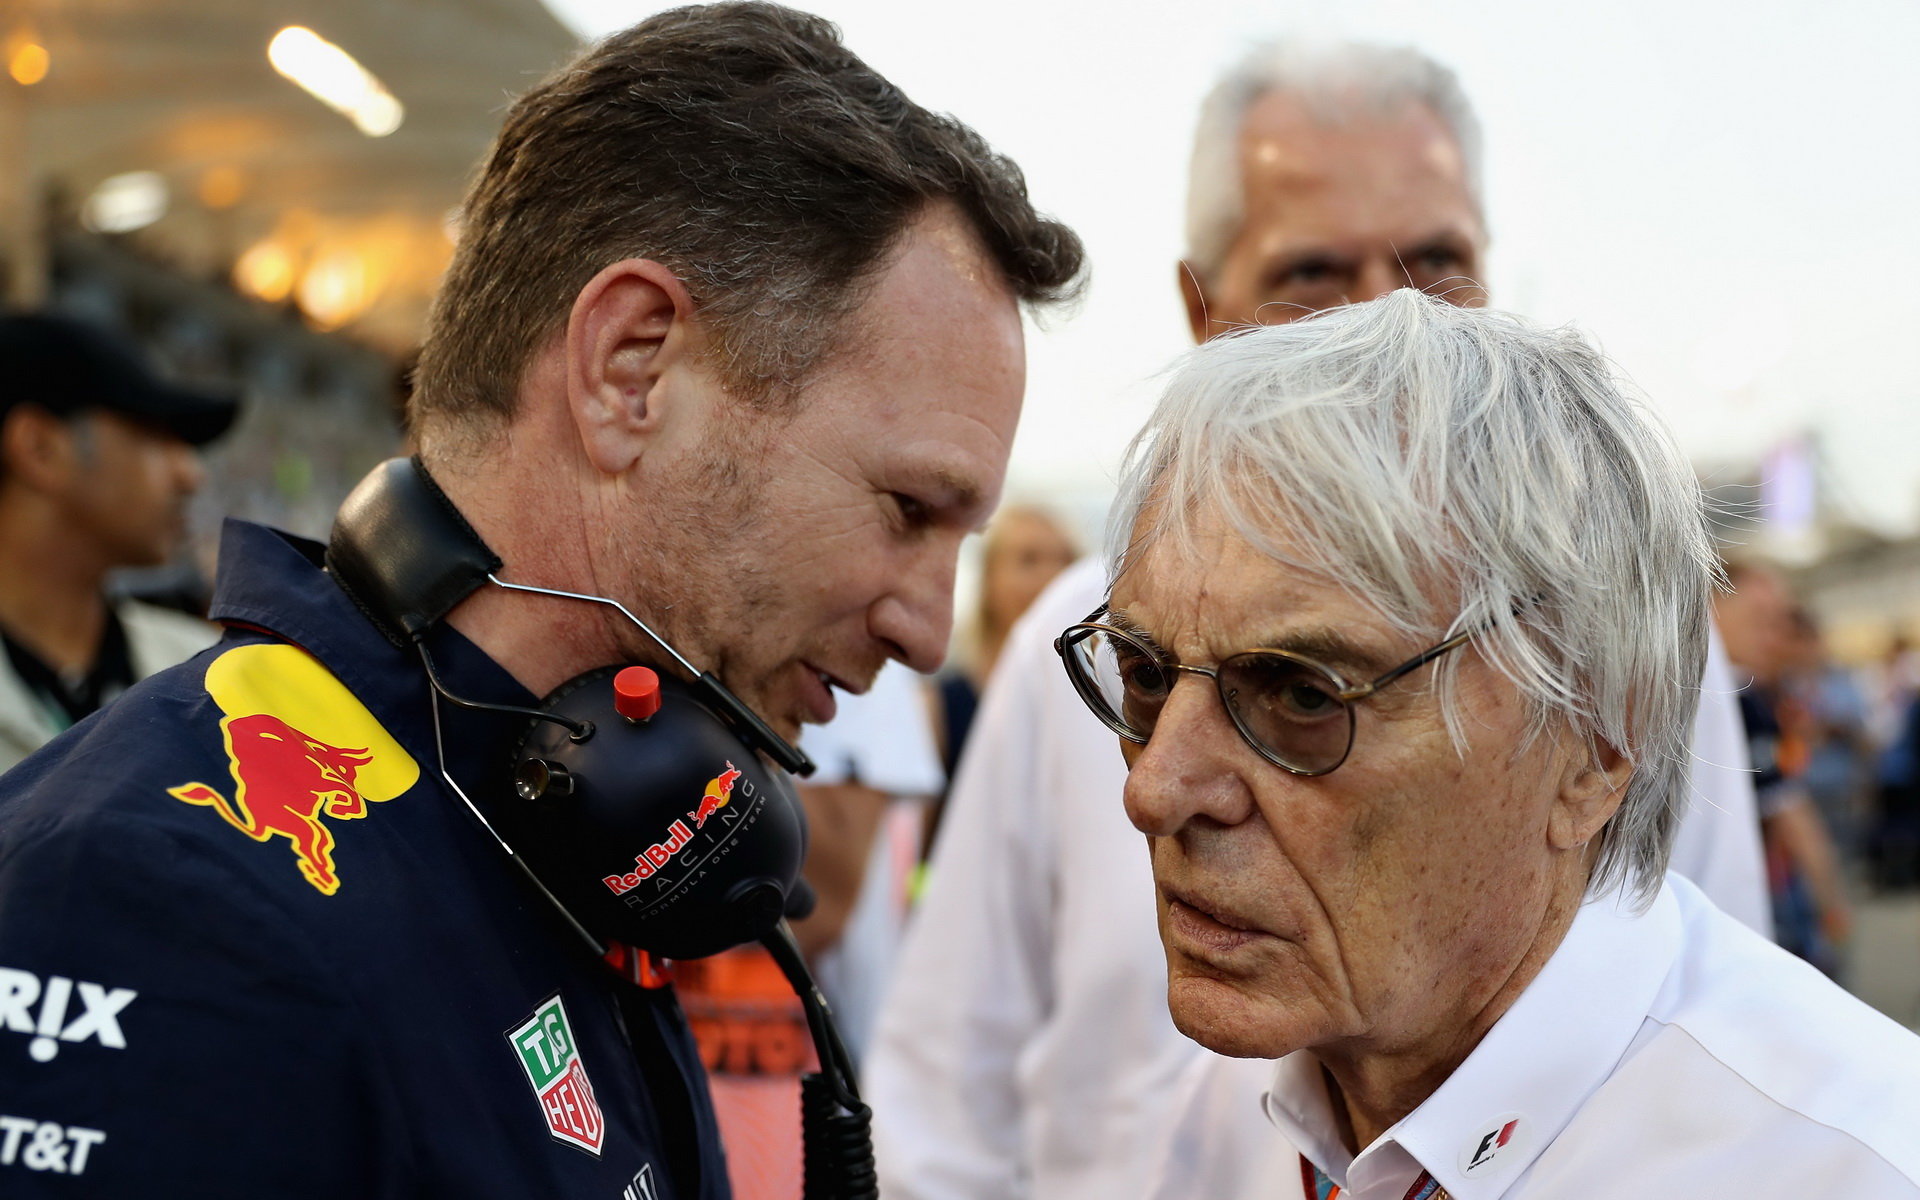 Bernie Ecclestone se stále těší dobrému zdraví, zde na fotce s Christianem Hornerem před závodem v Bahrajnu